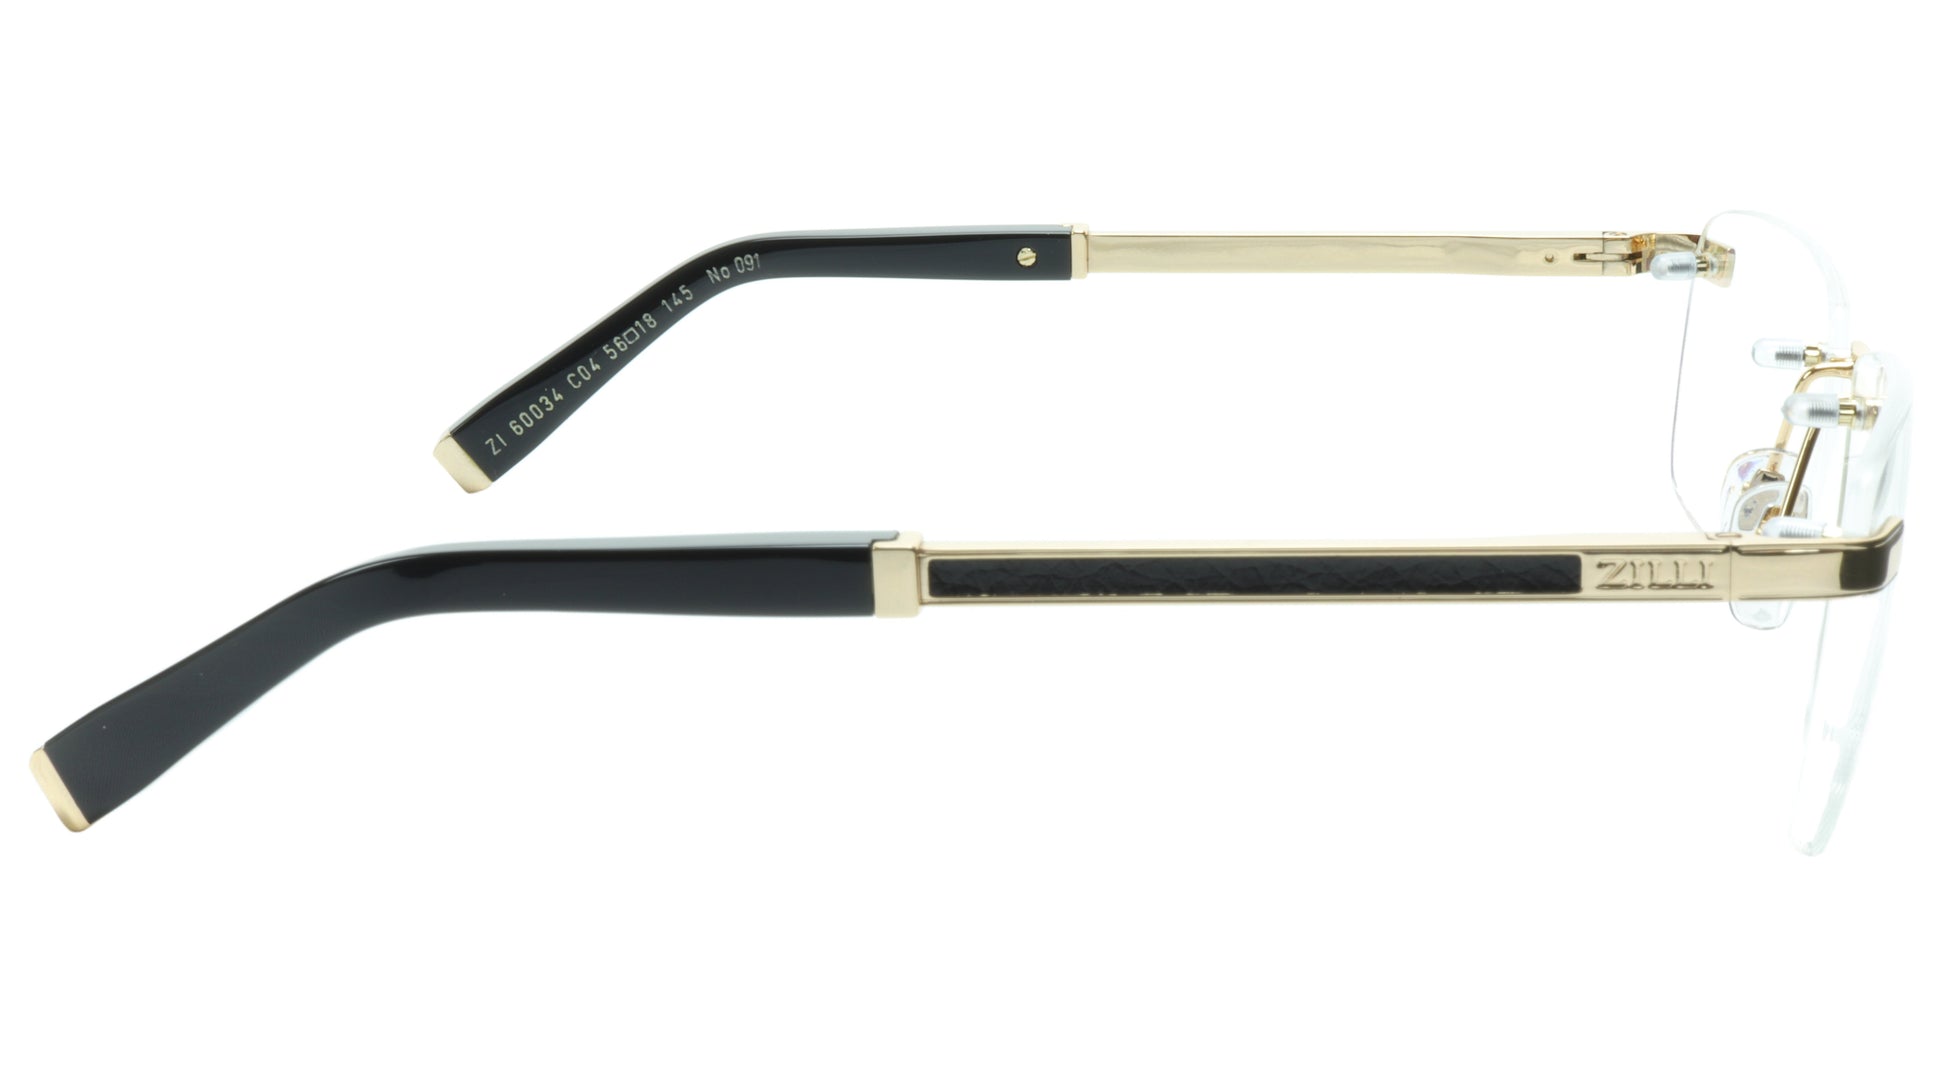 ZILLI Eyeglasses Frame Titanium Acetate Black Gold France Made ZI 60034 C04 - Frame Bay